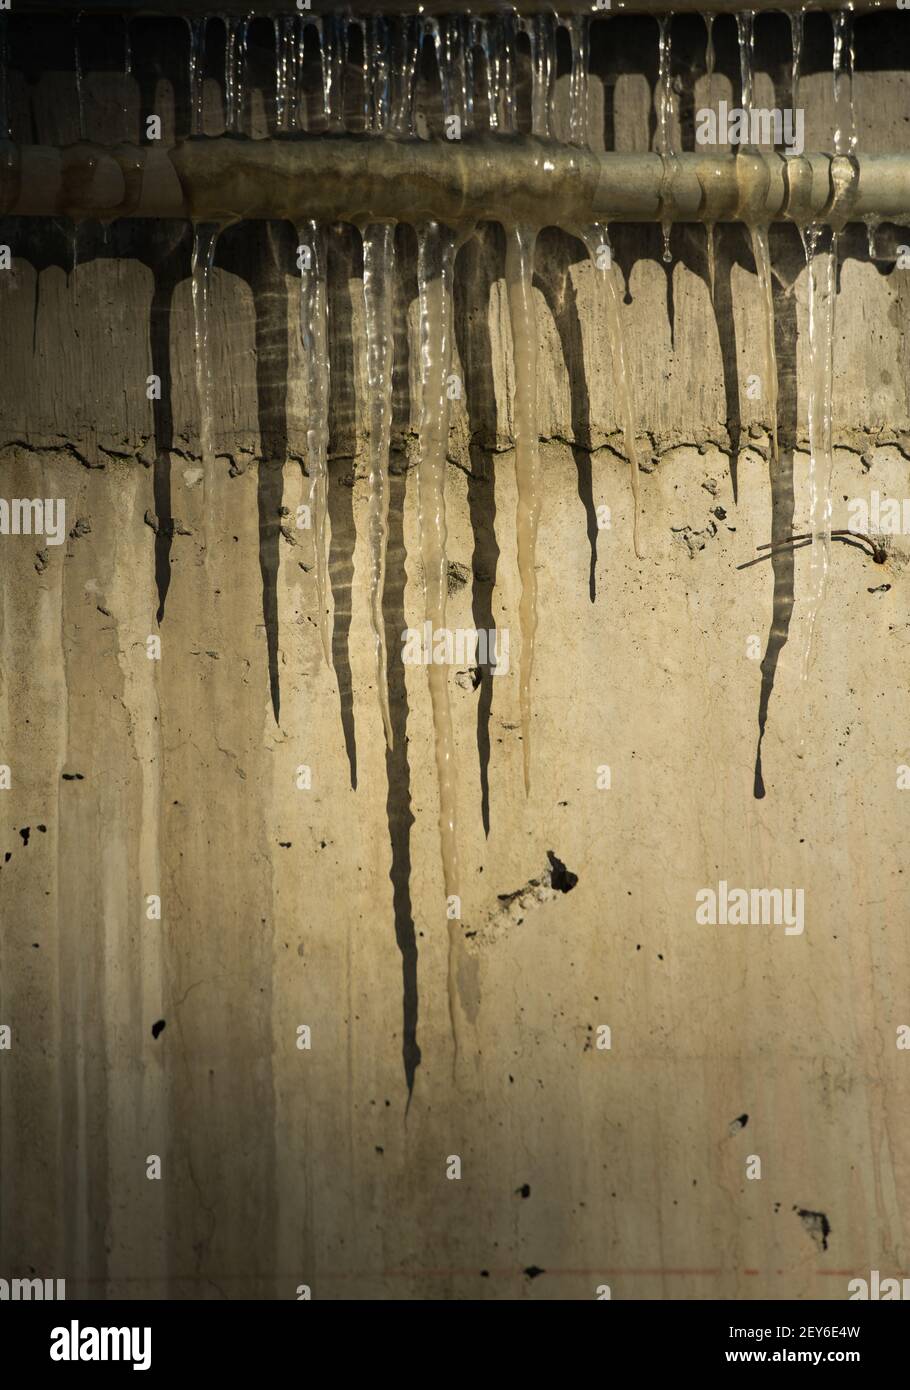 ghiaccioli congelati trasparenti e appuntiti appesi alle ombre della fusione industriale di tubi su cemento grungy esterno parete di fondo verticale Foto Stock